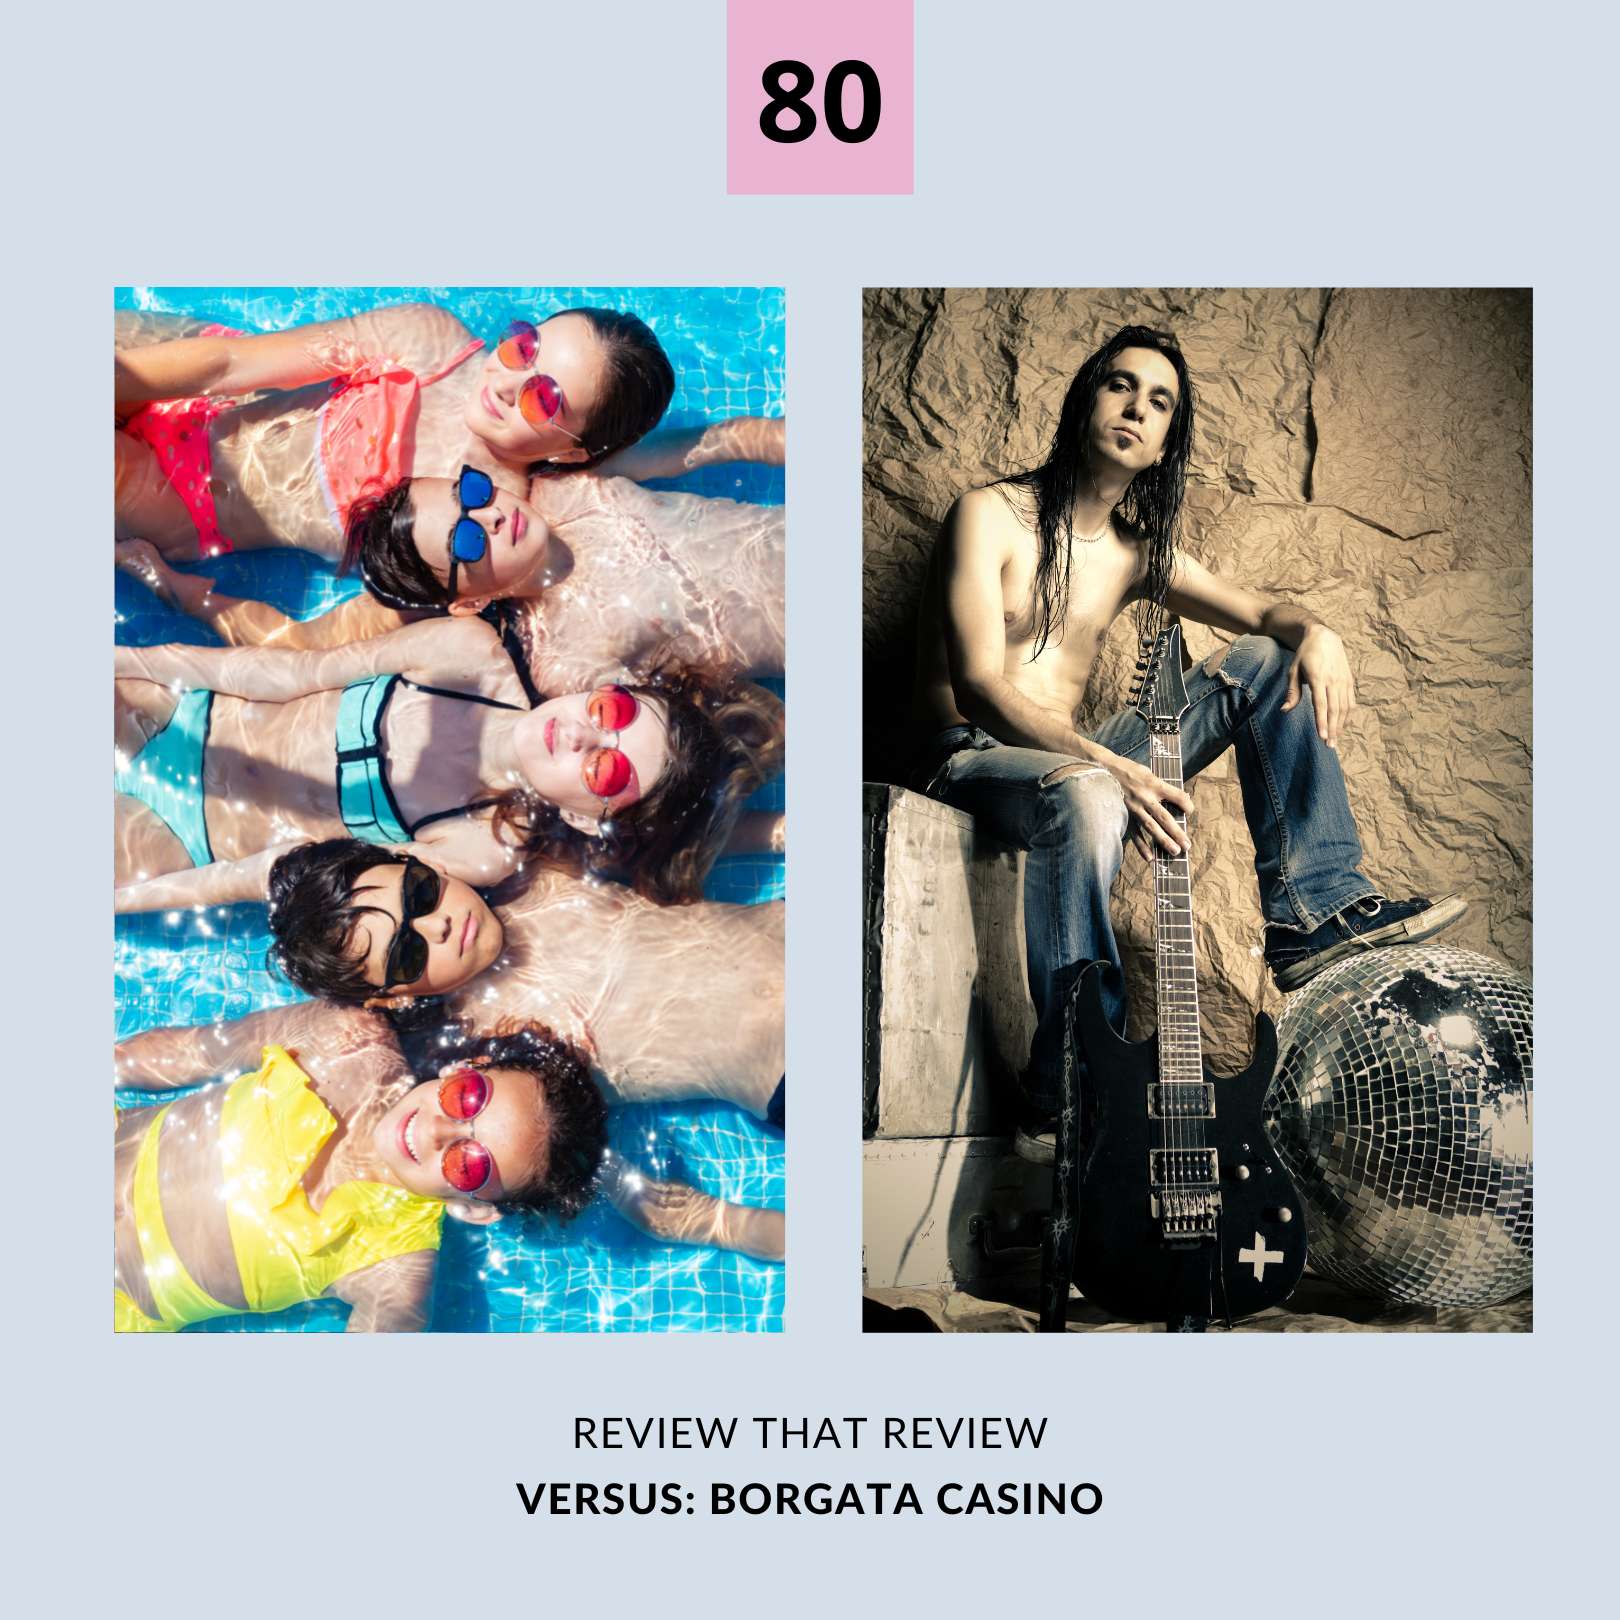 Episode 80: Borgata Casino 1 vs. 5 Stars